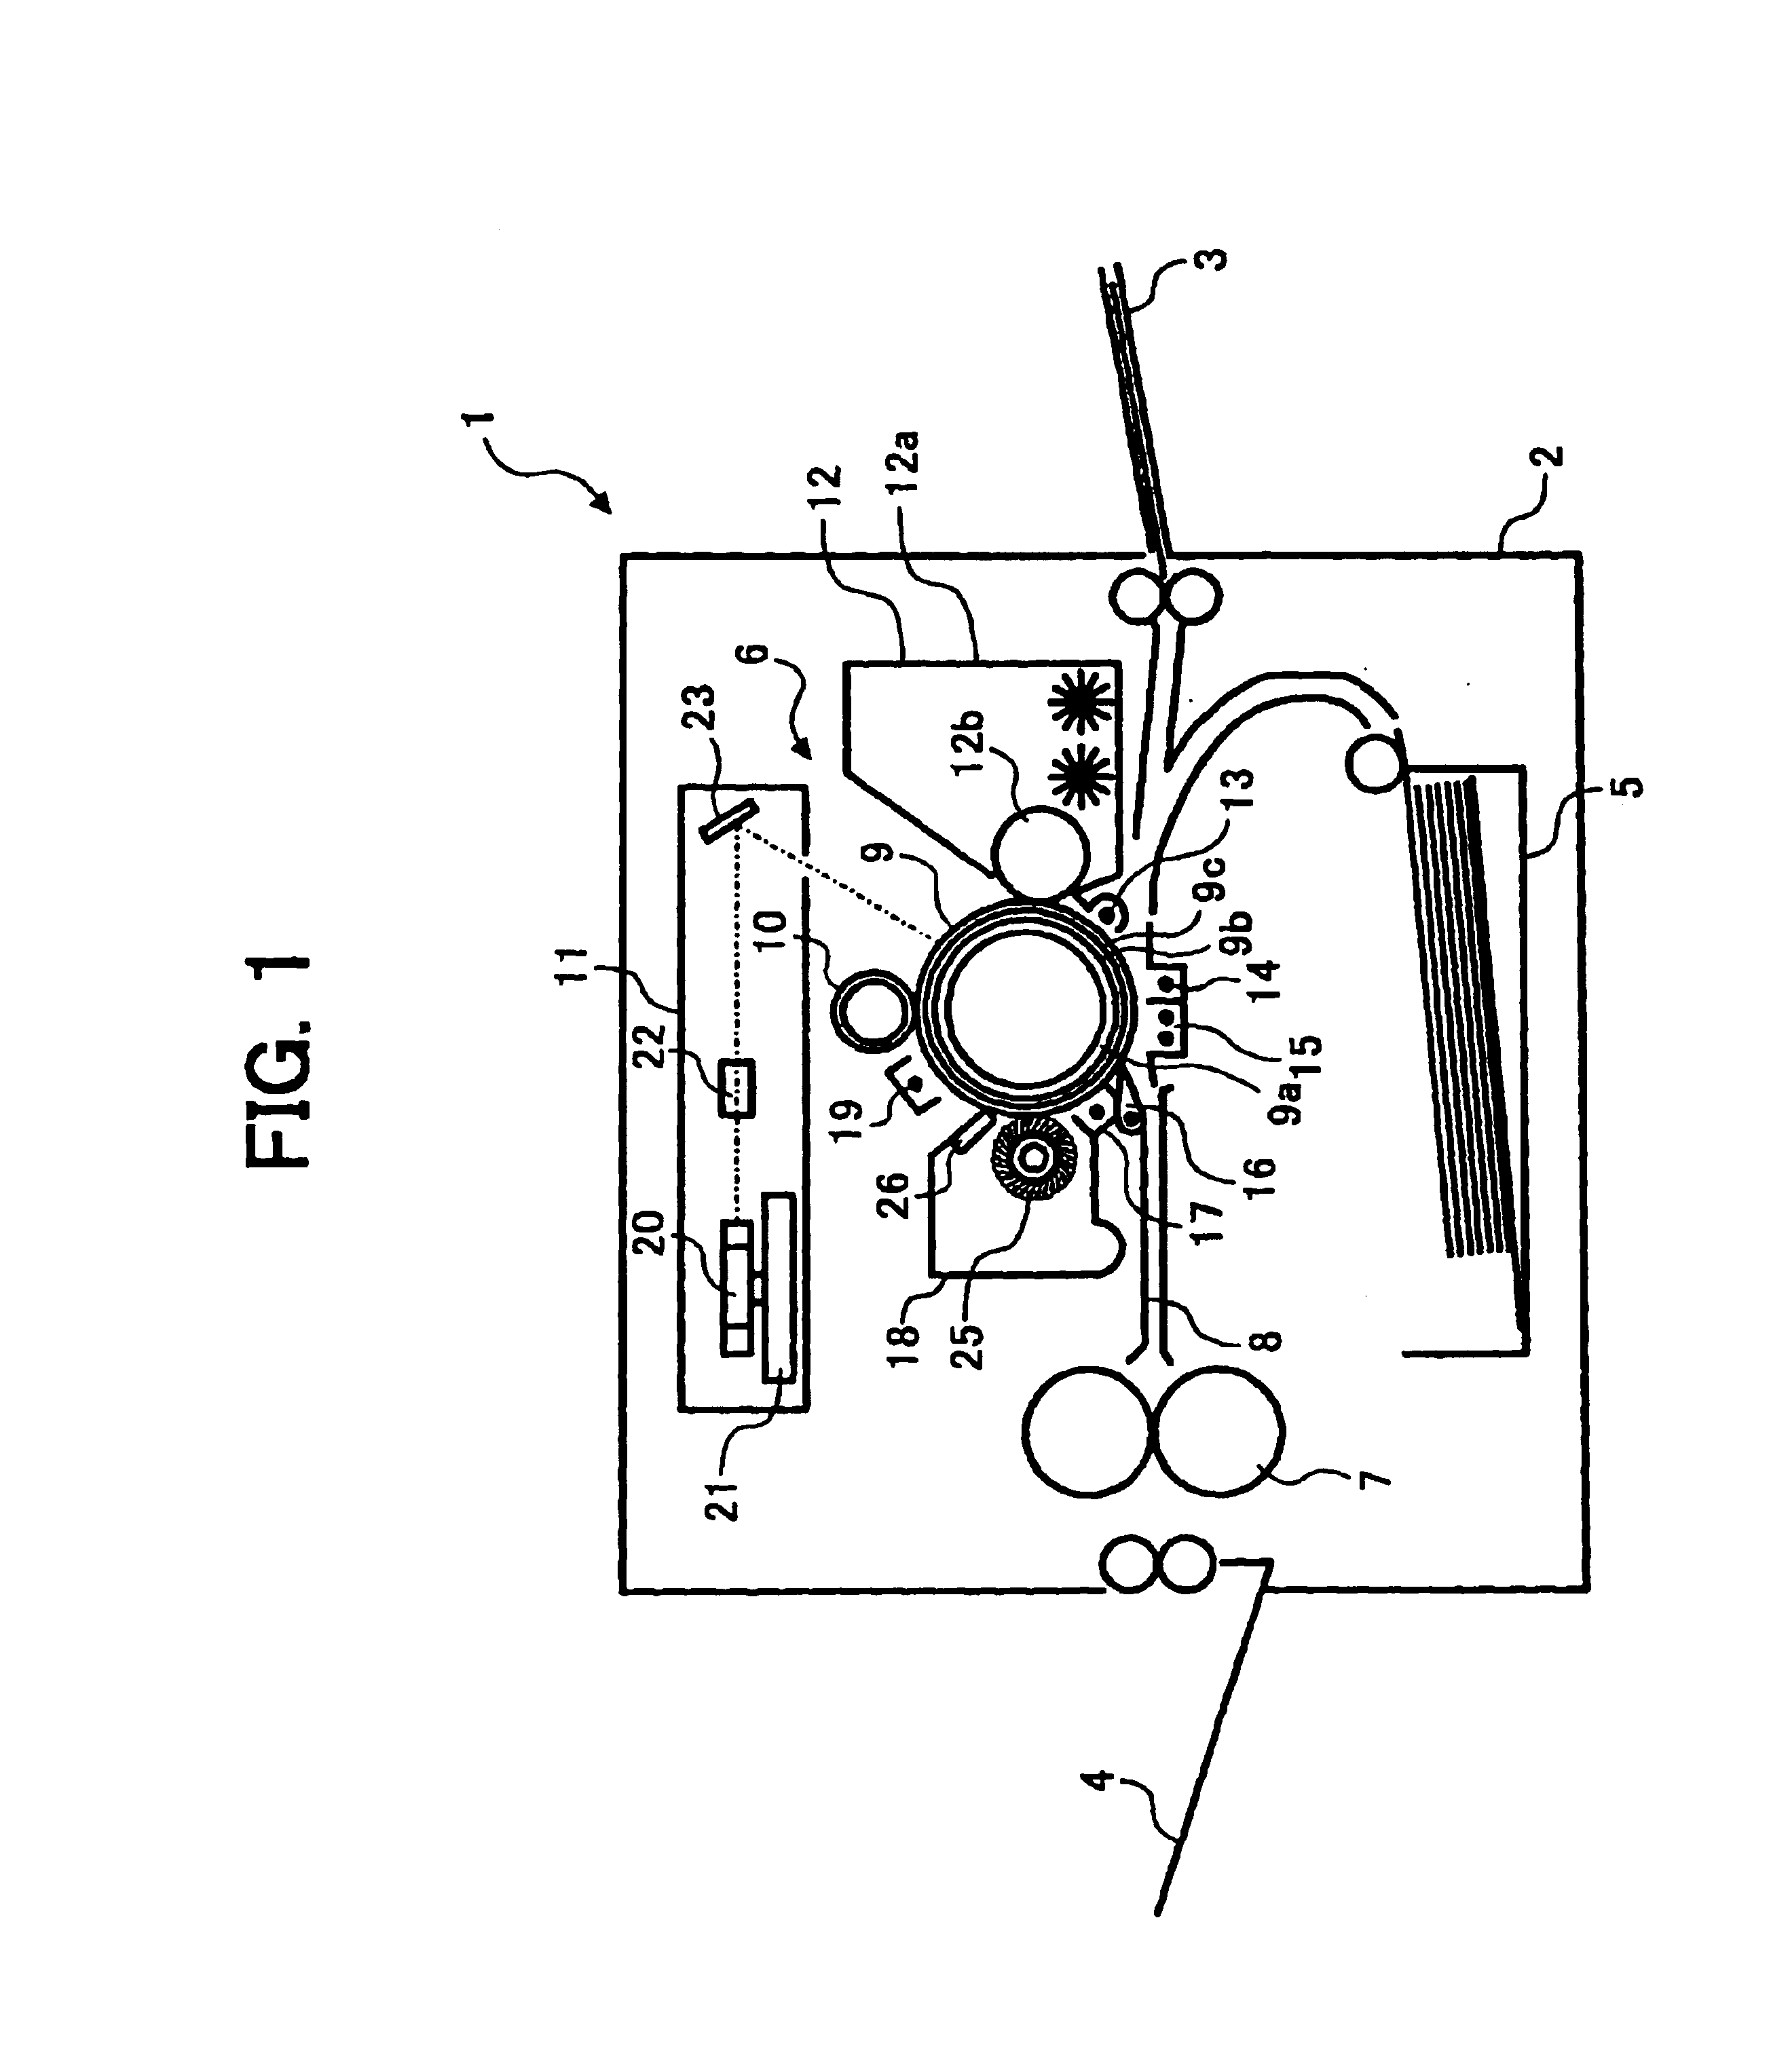 Image forming apparatus and copier